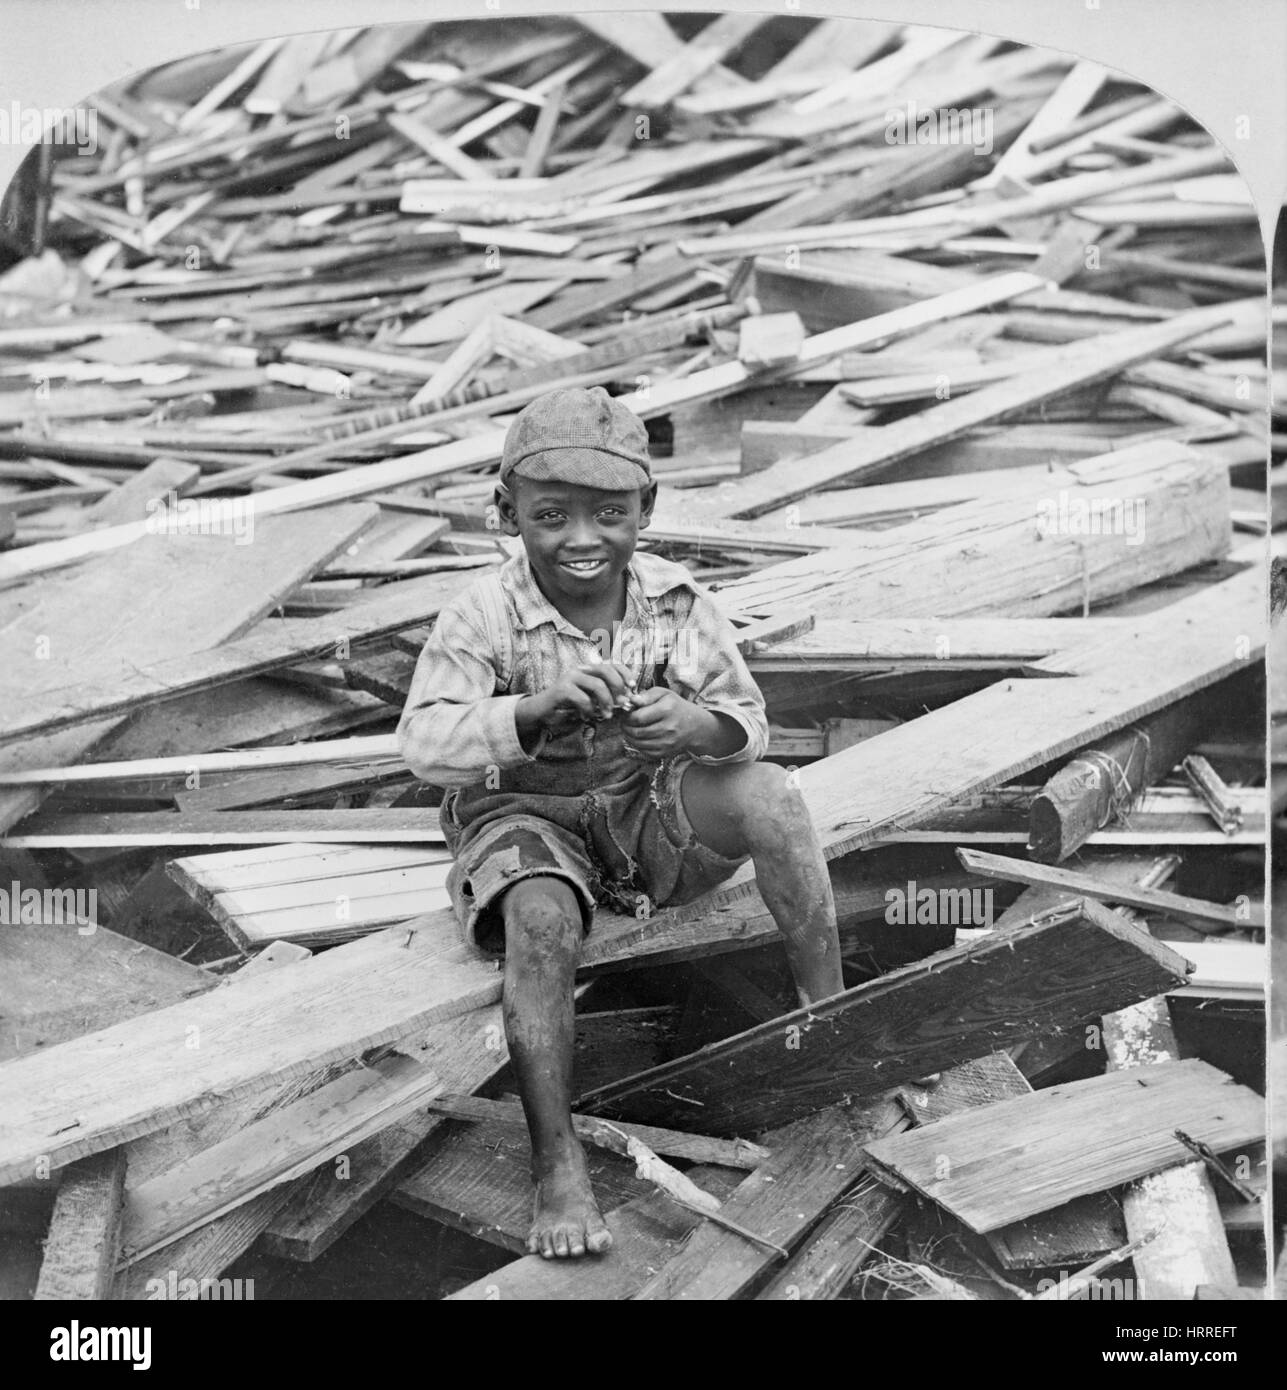 Portrait de jeune garçon assis sur le tas de débris après l'ouragan, Galveston, Texas, USA, seule image de carte stéréo, 1900 Banque D'Images